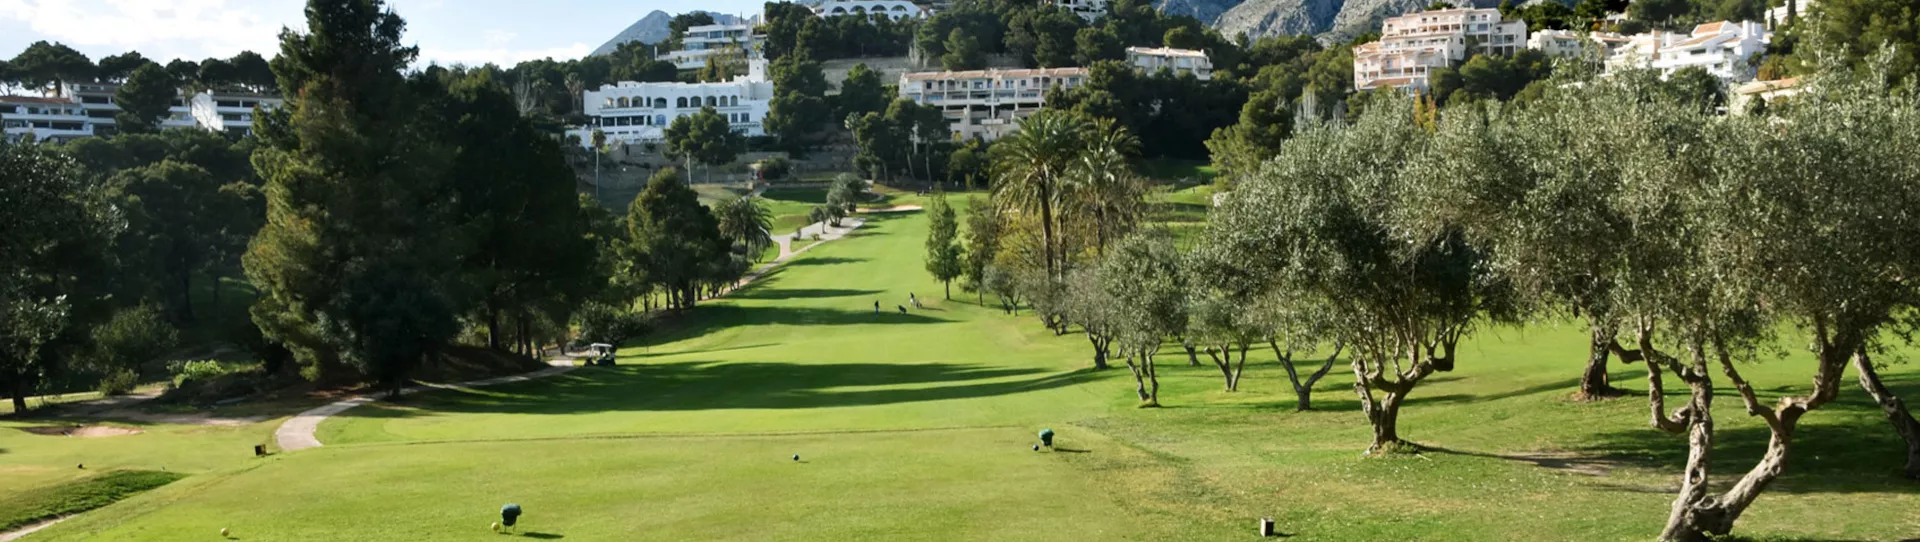 Spain golf courses - Altea Golf Club - Photo 3